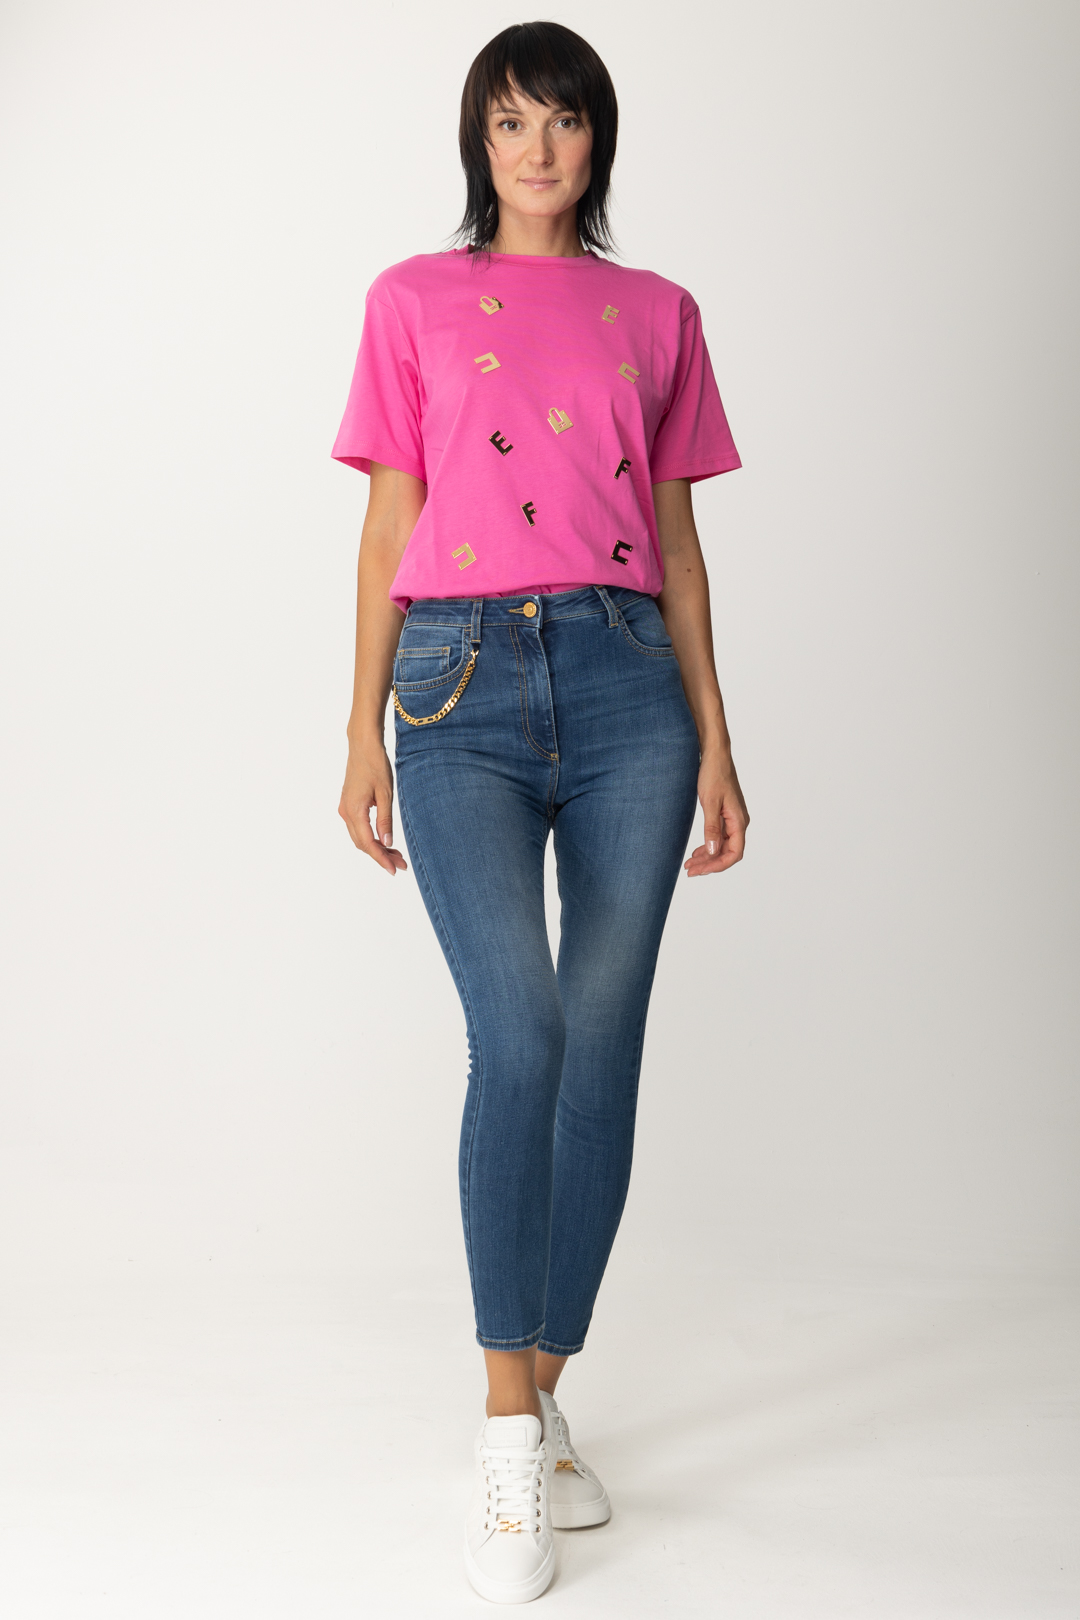 Vorschau: Elisabetta Franchi T-Shirt mit Schriftzugplaketten PINK FLUO